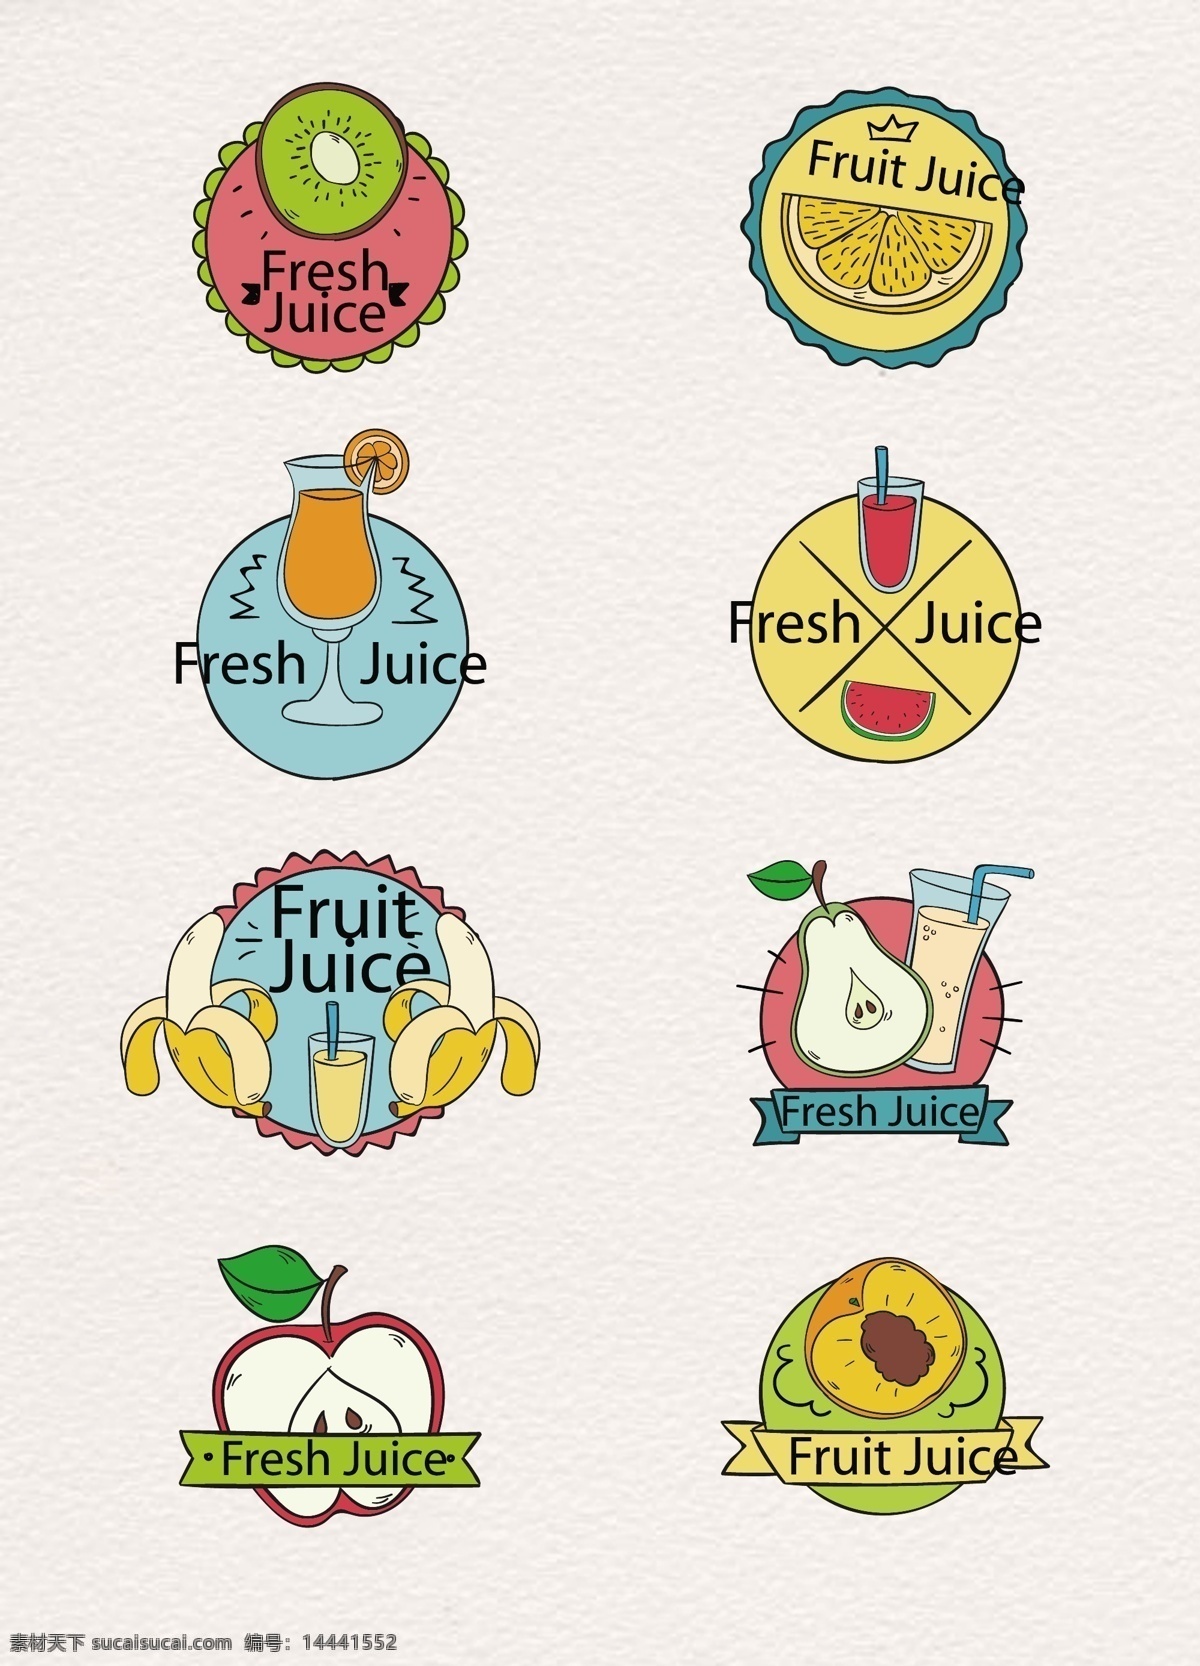 彩绘 水果 果汁 矢量 图标 卡通 柠檬 西瓜 苹果 果汁图标 鲜榨果汁 fruit juice 橙汁 奇异果 香蕉 梨